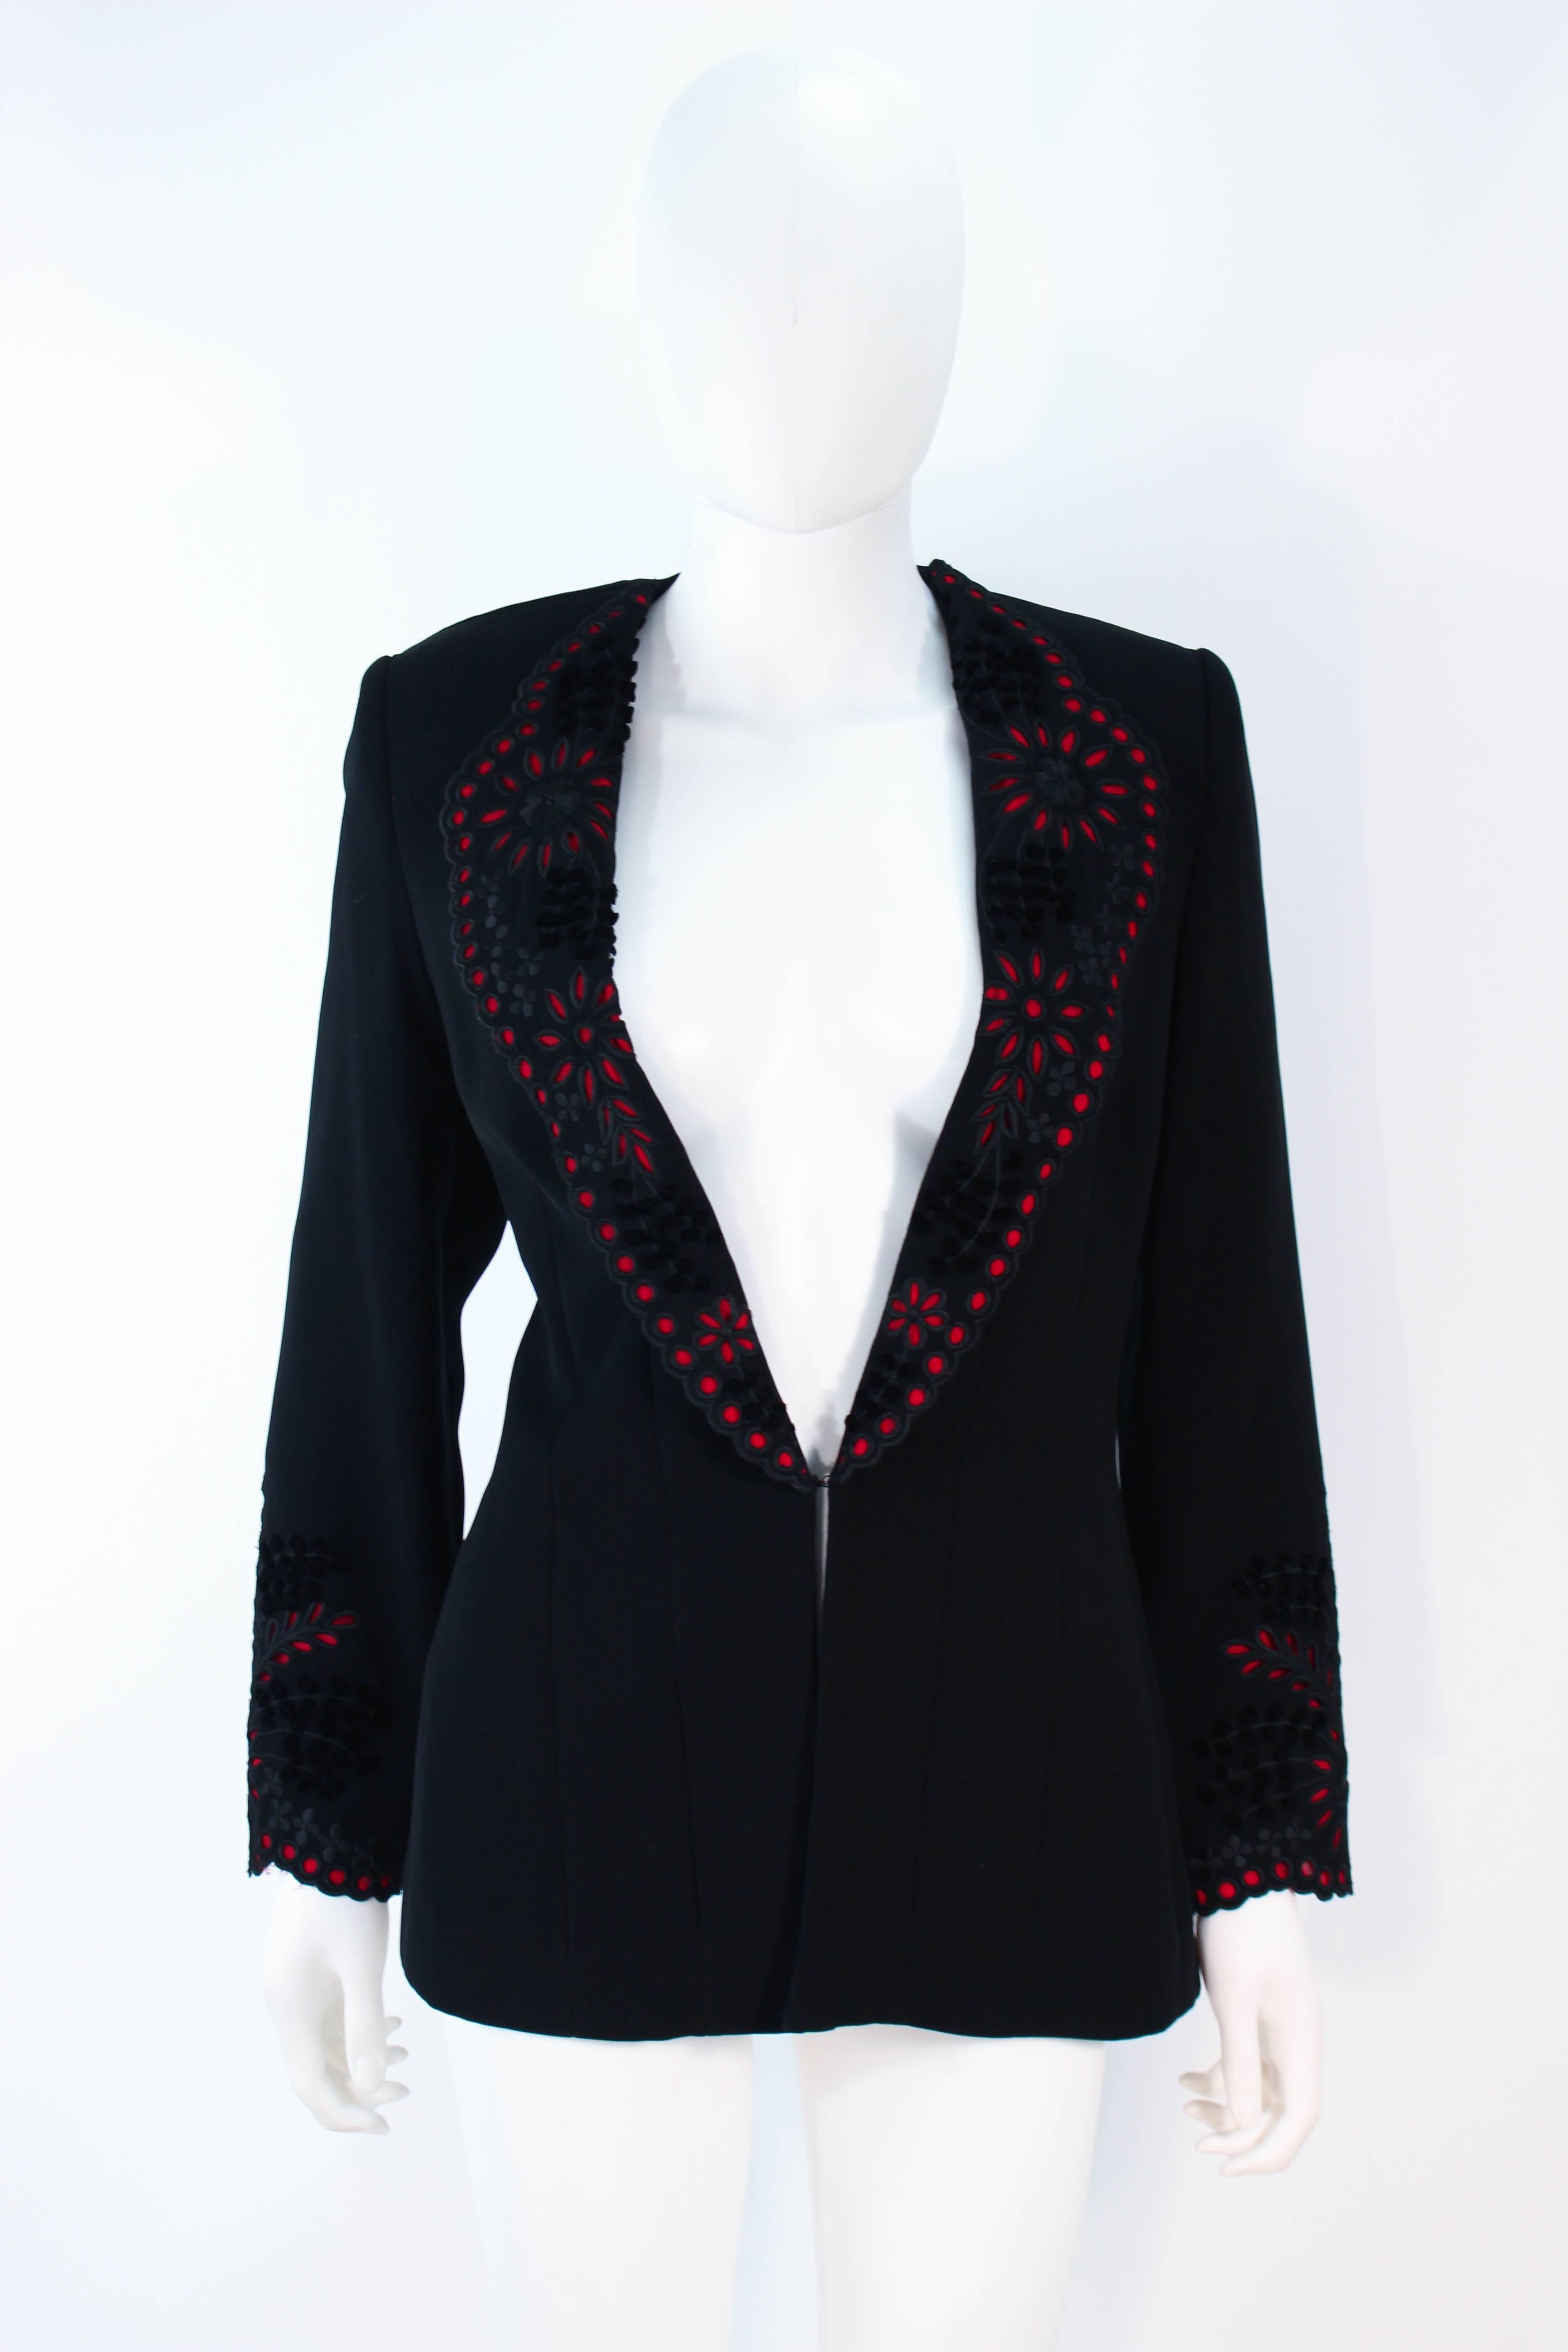 Women's FE ZANDI Vintage Black Floral Bustier Lace Pant Suit Size 8 For Sale